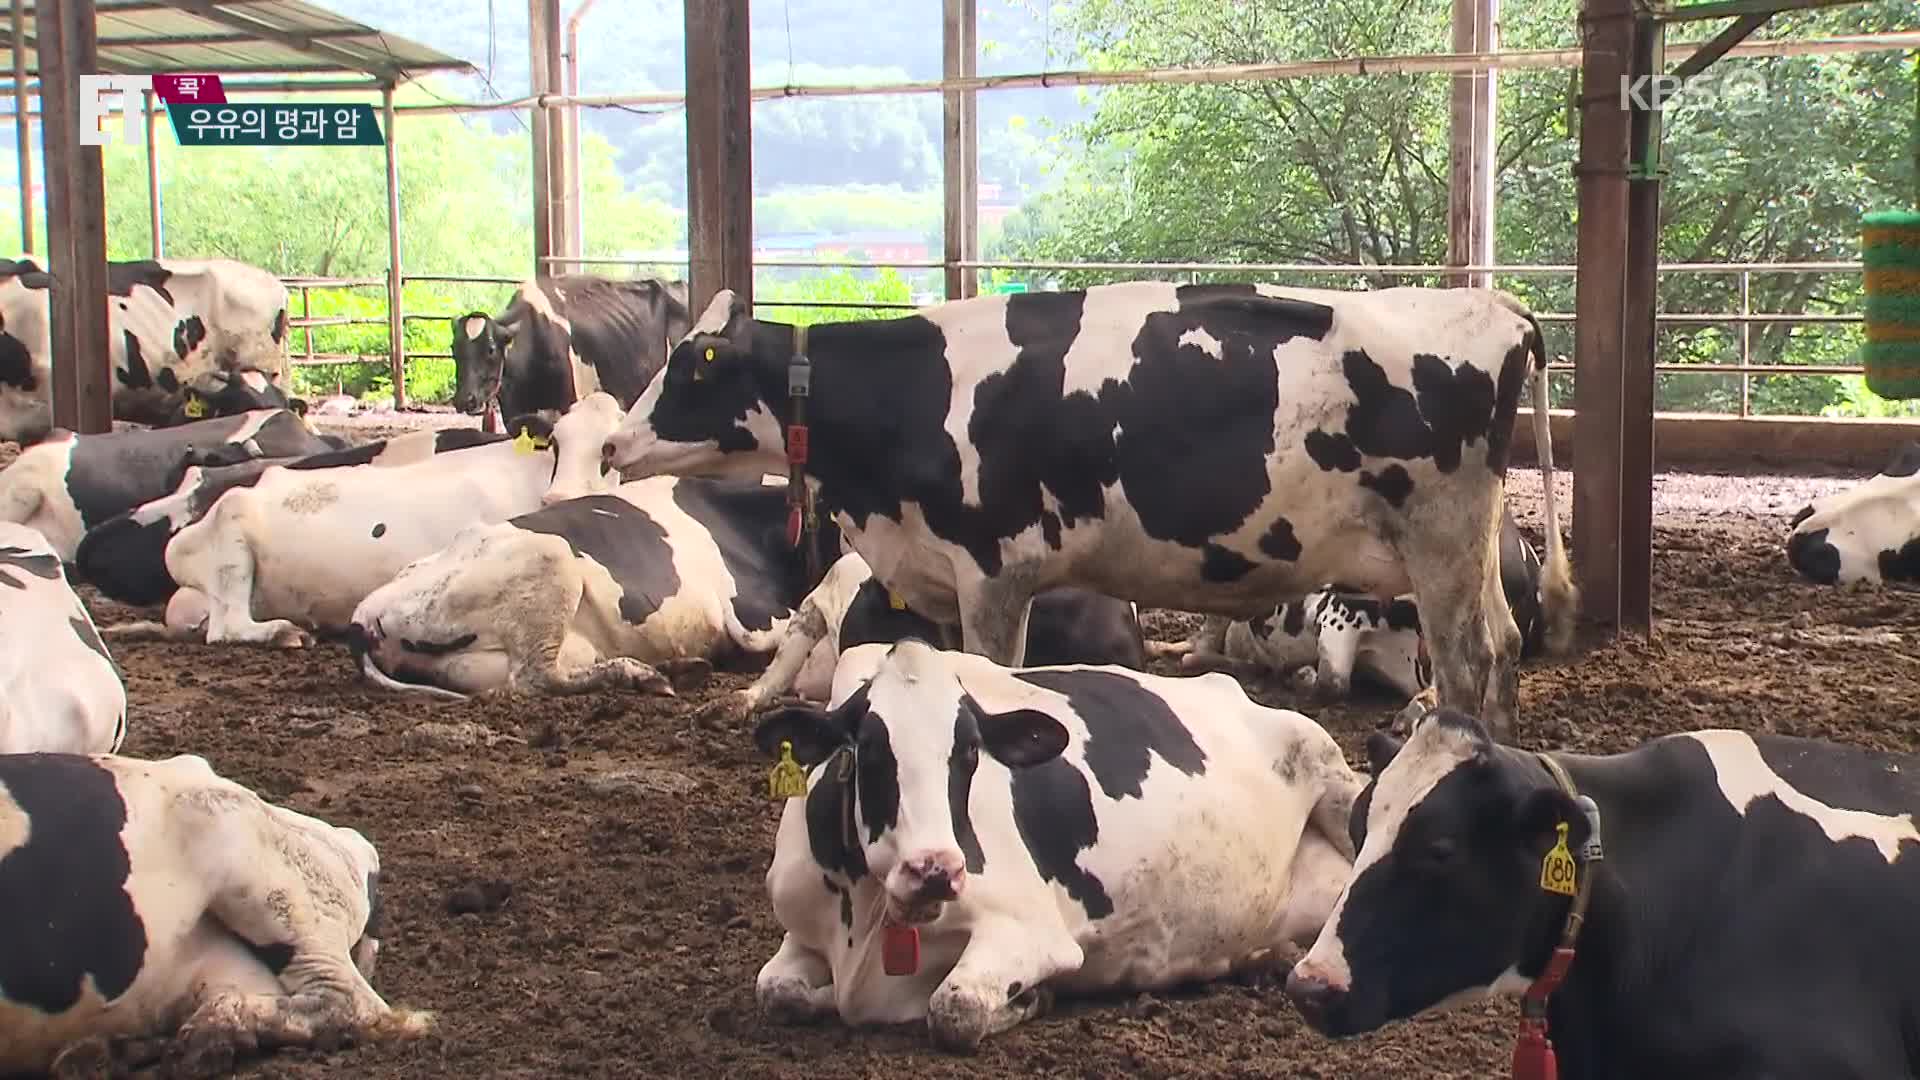 [ET] “폭염에 젖소 살려”…‘밀크플레이션’ 조짐 속 드러난 우유의 명과 암